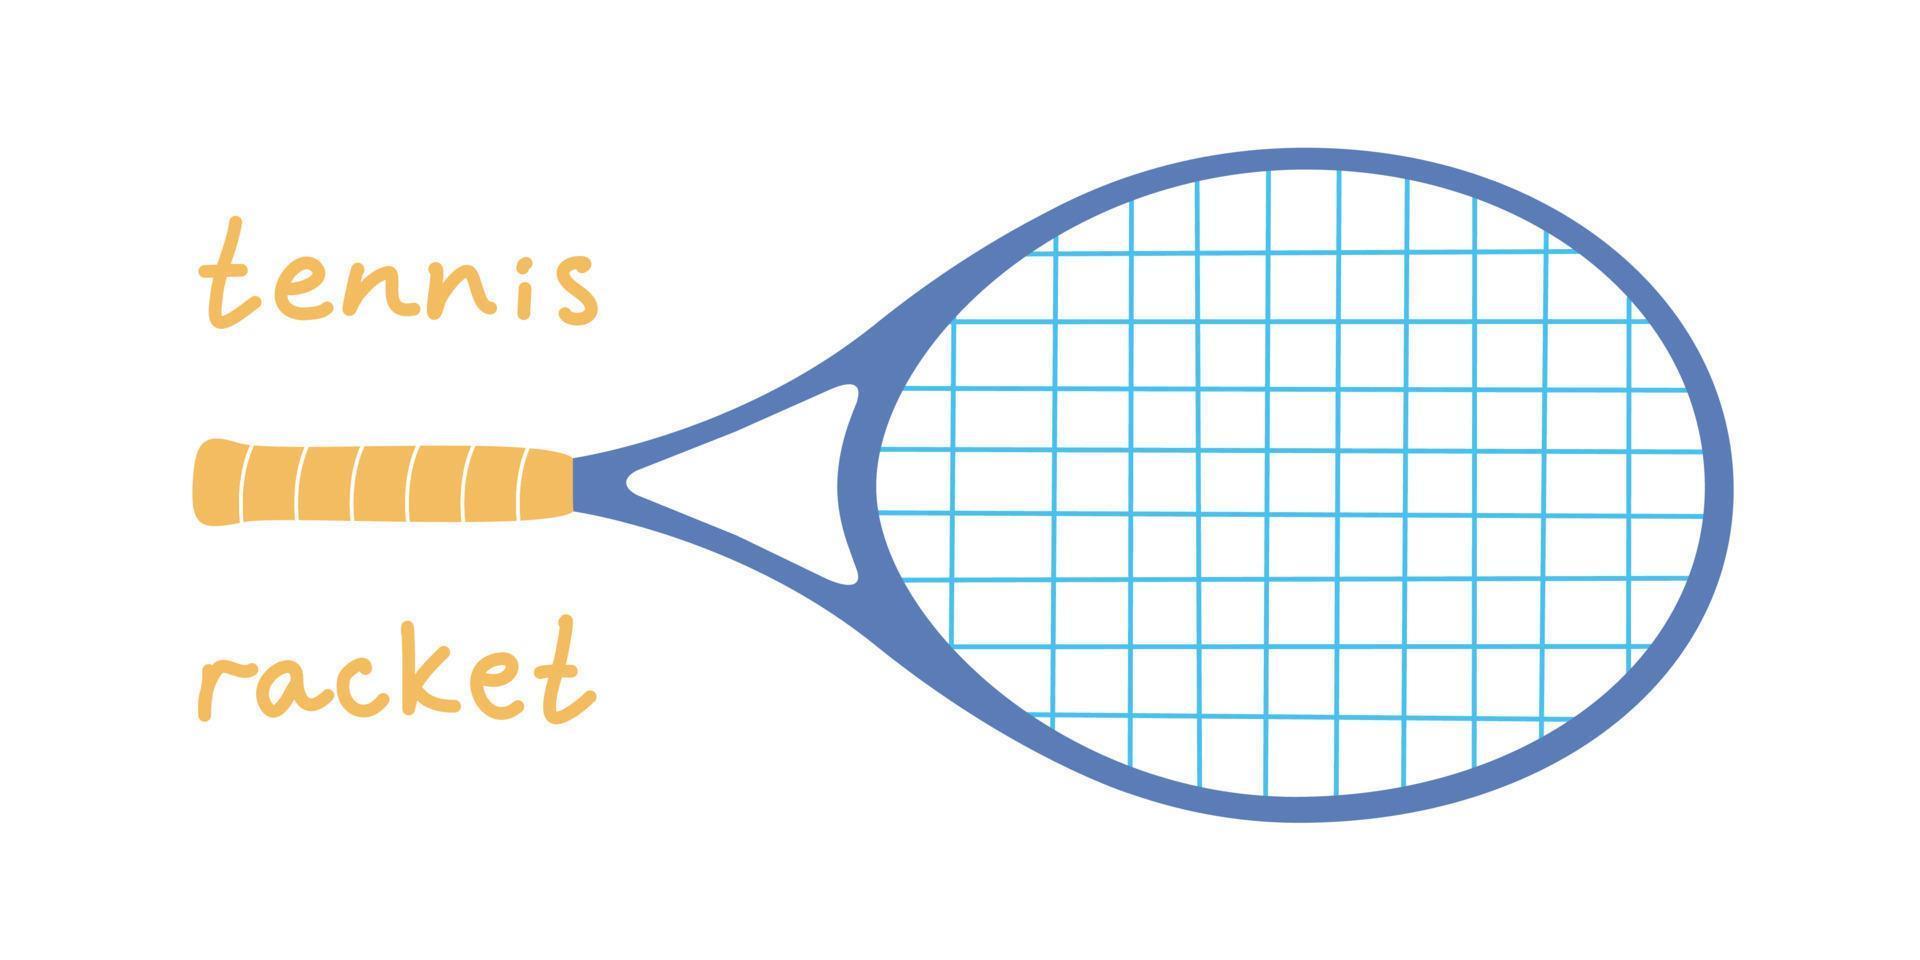 flache vektorillustration im kindlichen stil. handgezeichneter tennisschläger für kinder. vektor